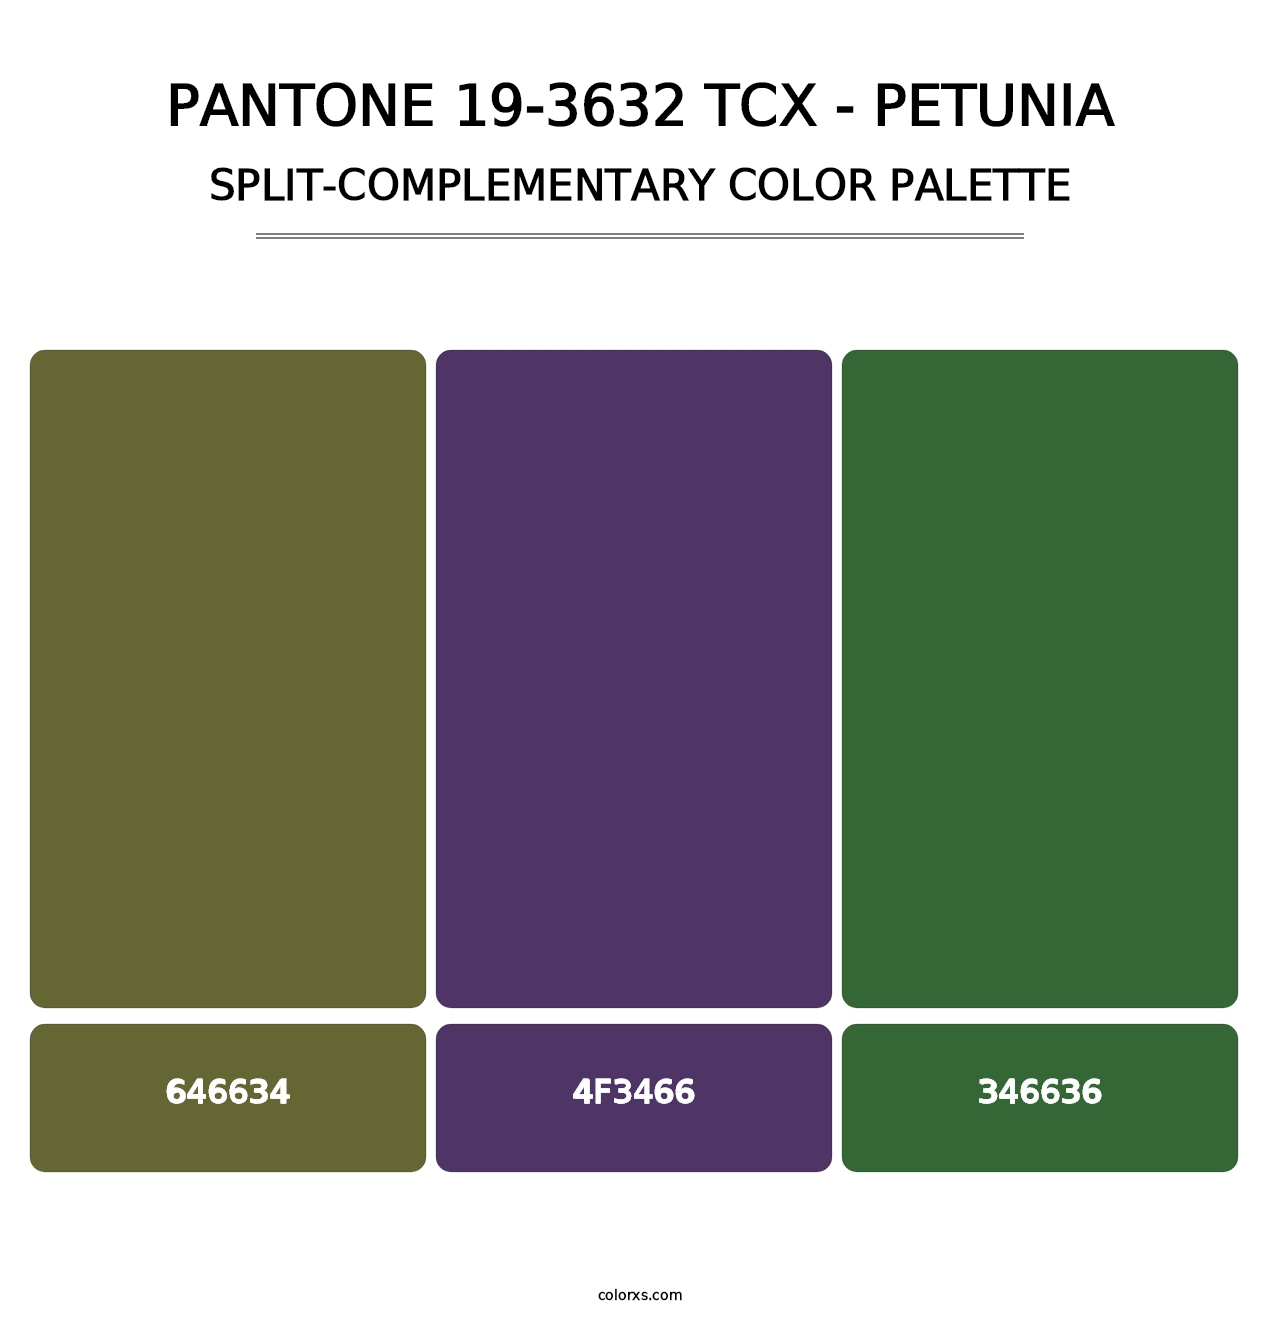 PANTONE 19-3632 TCX - Petunia - Split-Complementary Color Palette